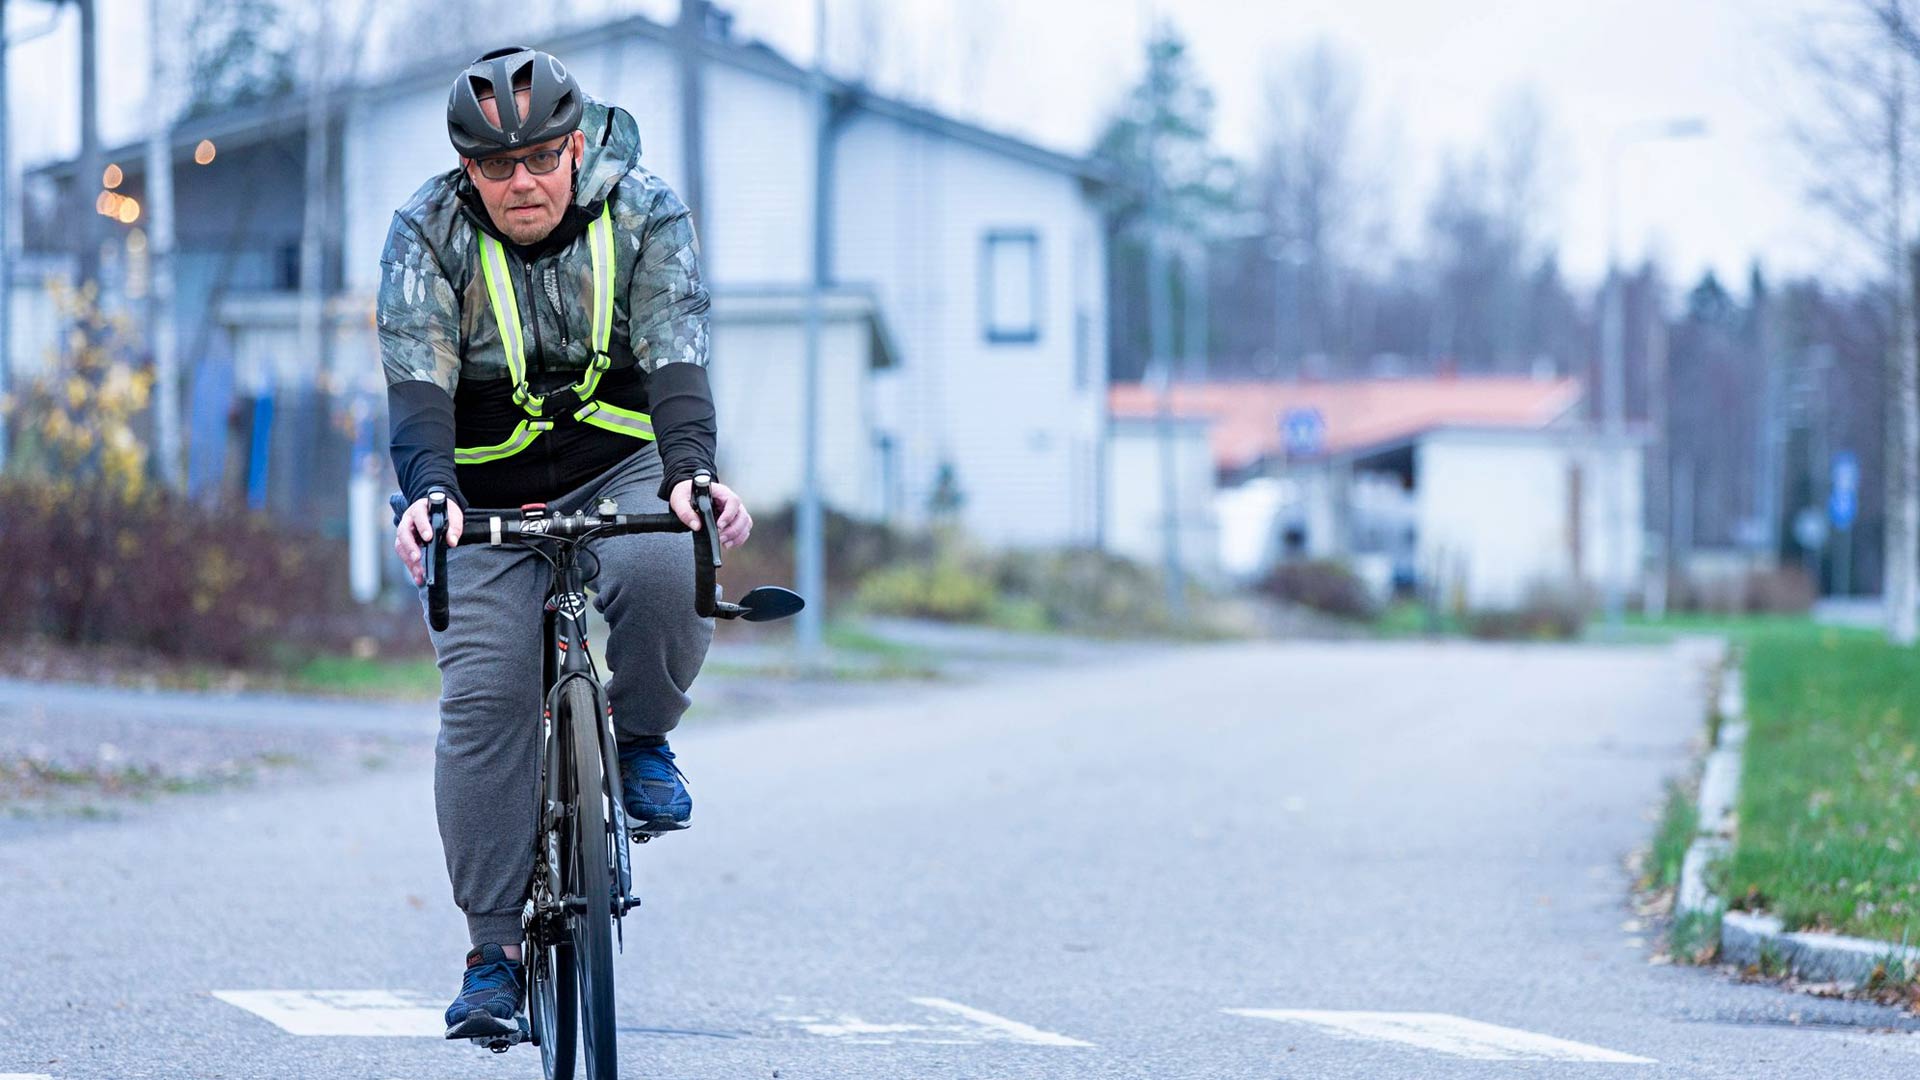 Entisestä liikunnan vihaajasta tuli elintapamuutoksen myötä innokas liikkuja. Nykyään Timo Rautajärvi käy kuntosalilla 4–5 kertaa viikossa ja pyöräilemässä lähes päivittäin.